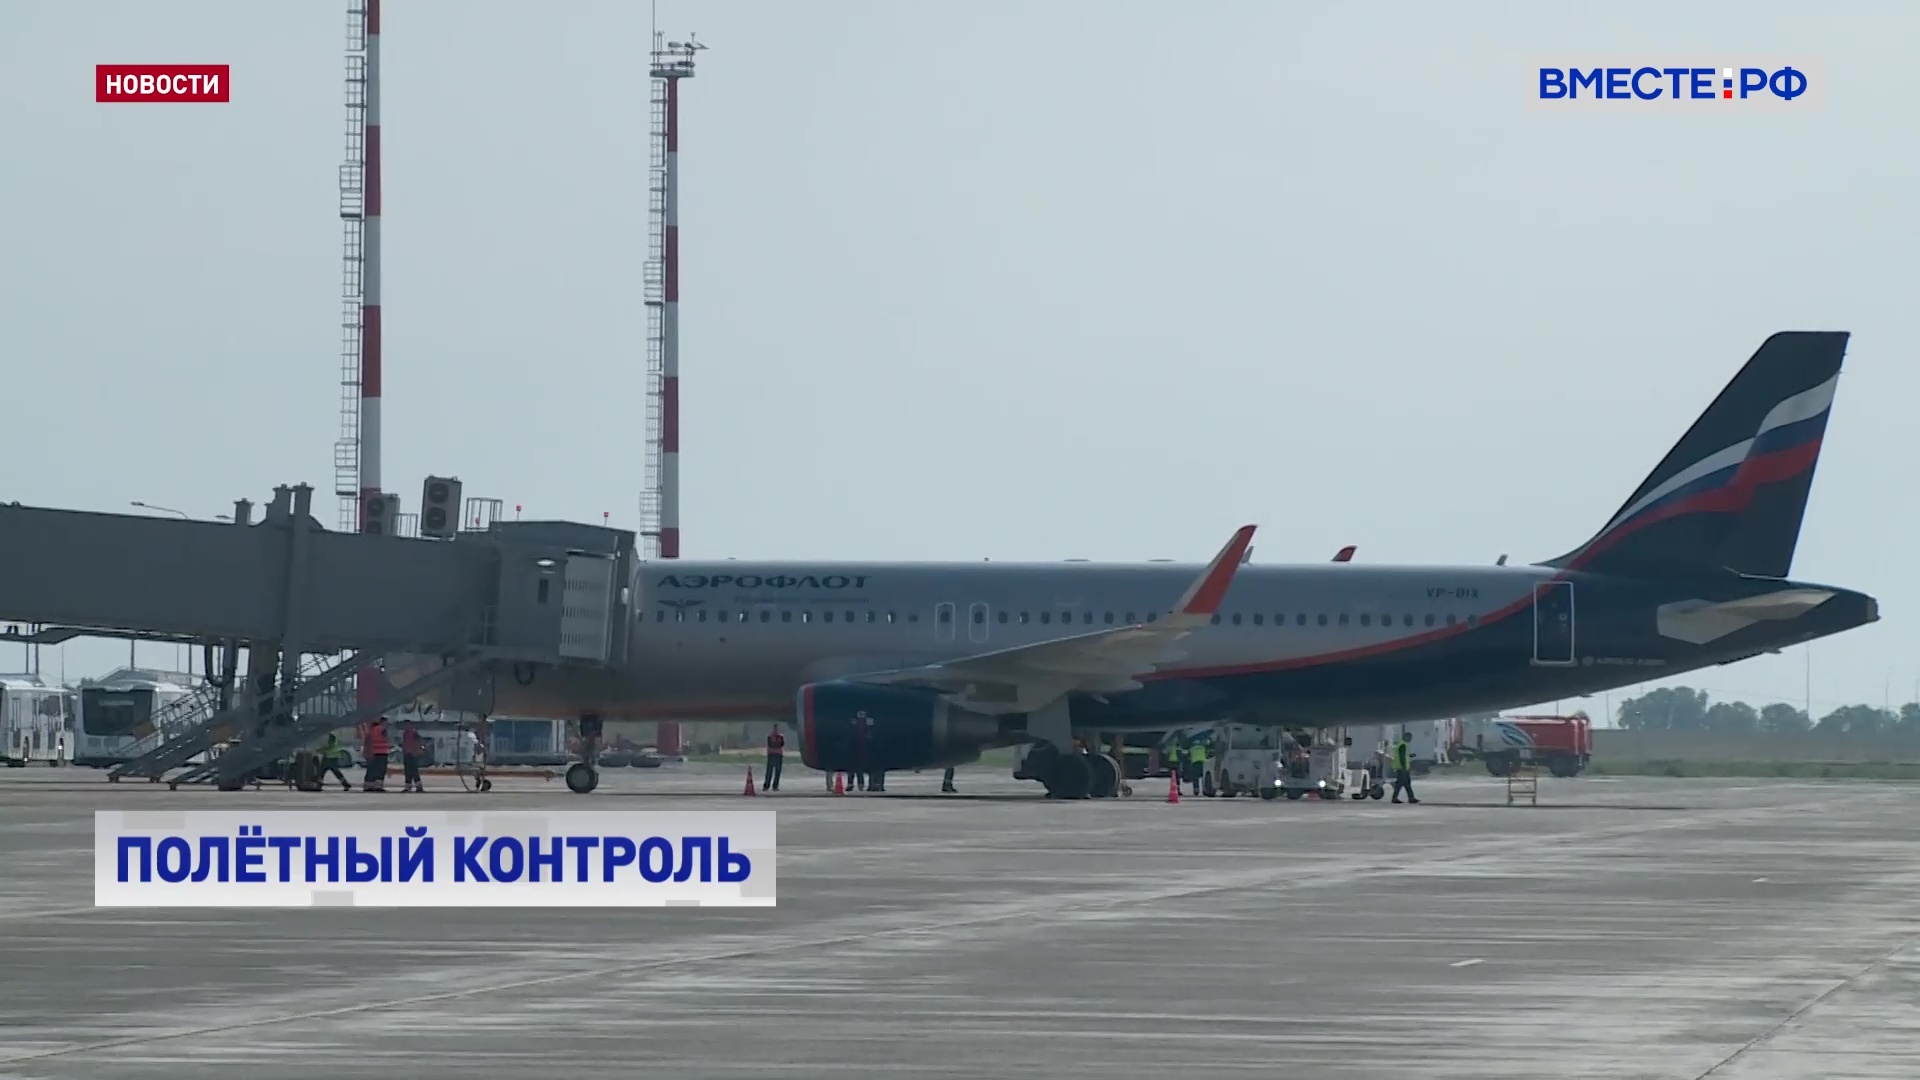 Правительство делает все, чтобы поддержать российских авиаперевозчиков, заверяет Минтранс